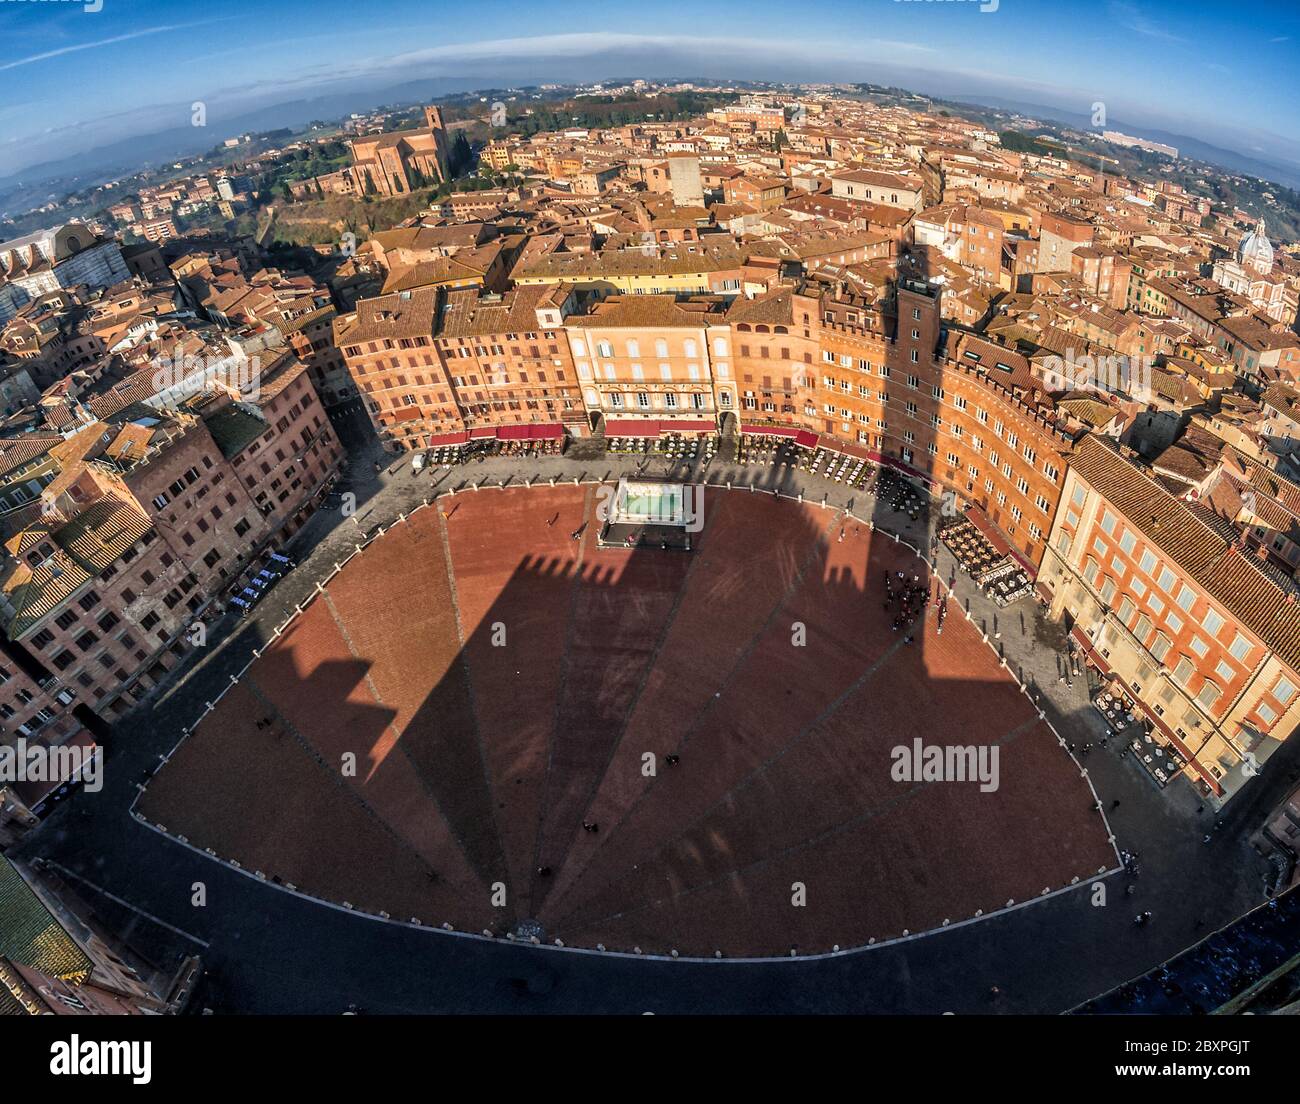 La famosa piazza del campo de Siena vista desde la parte superior de la torre con un ojo de pez Foto de stock